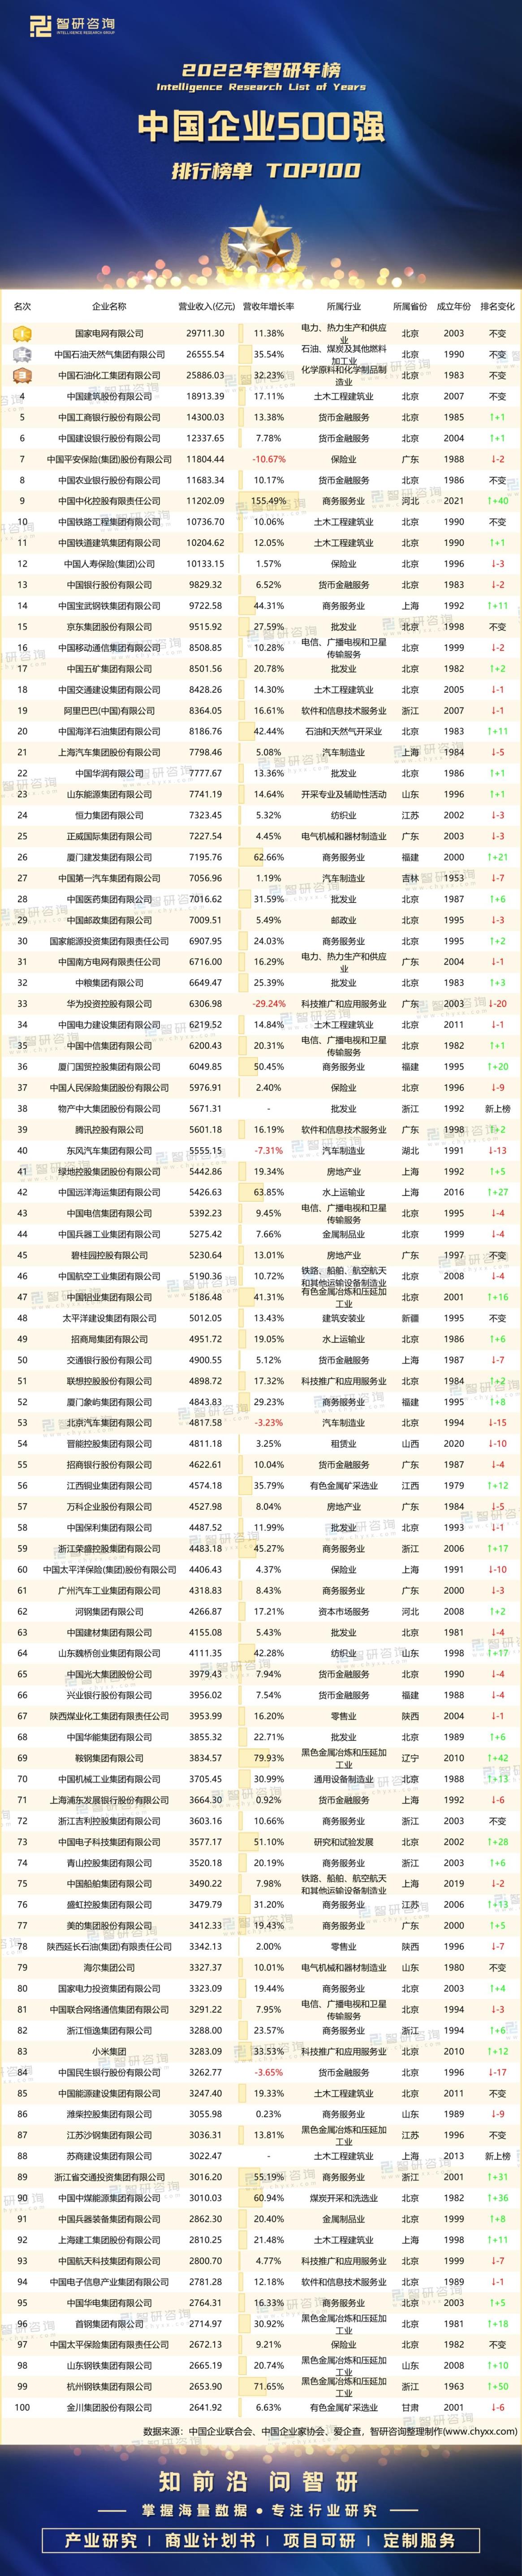 中国世界五百强企业名单(最新中国企业500强名单)